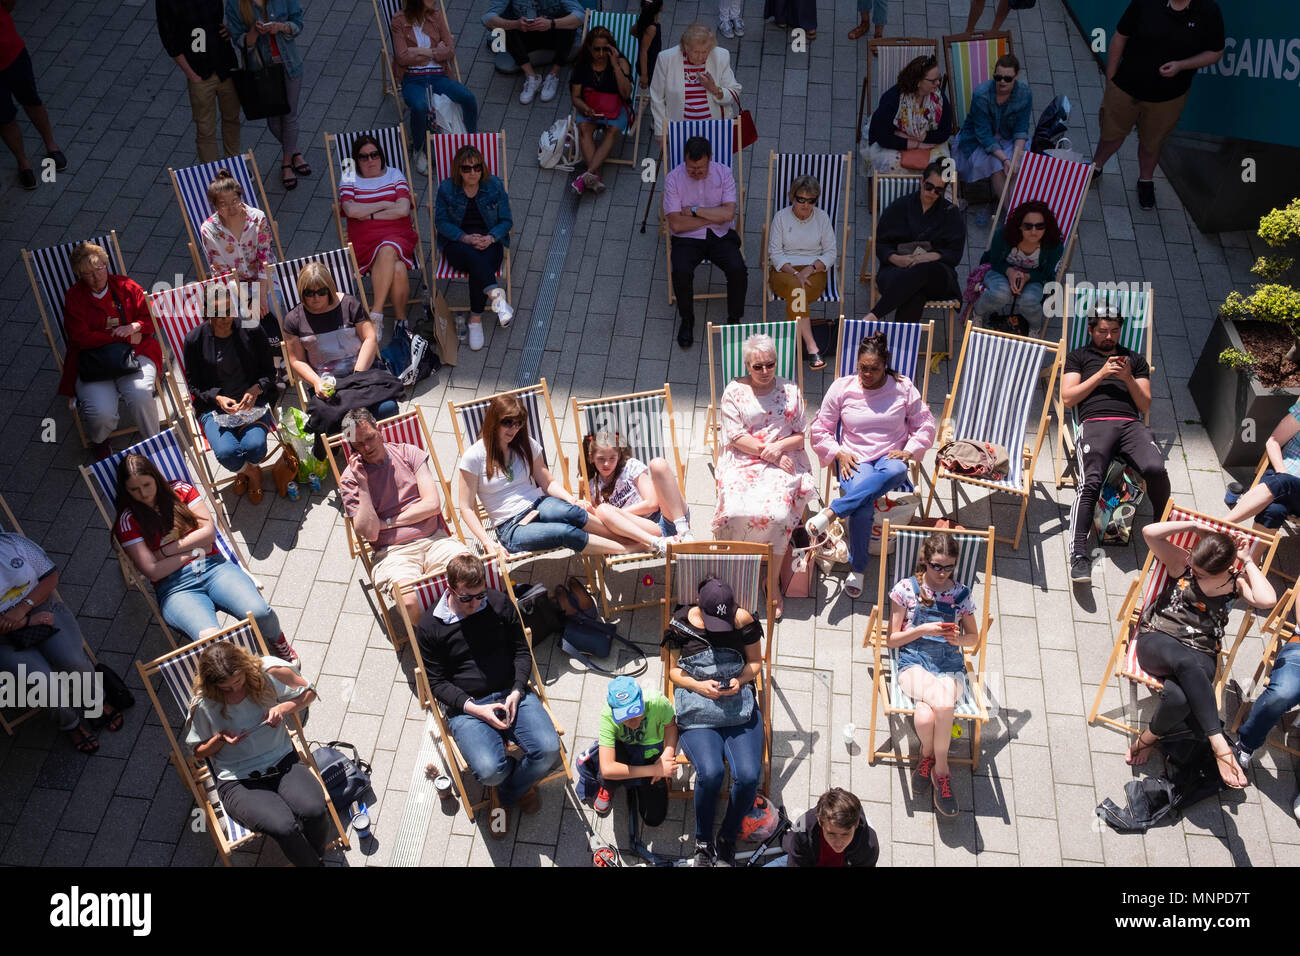 London, England, 19. Mai 2018. Eine Masse ist auf den Liegestühlen beobachten die königliche Hochzeit auf einem großen Bildschirm an der LDO in Wembley Park © Tim Ring/Alamy Leben Nachrichten sitzt Stockfoto